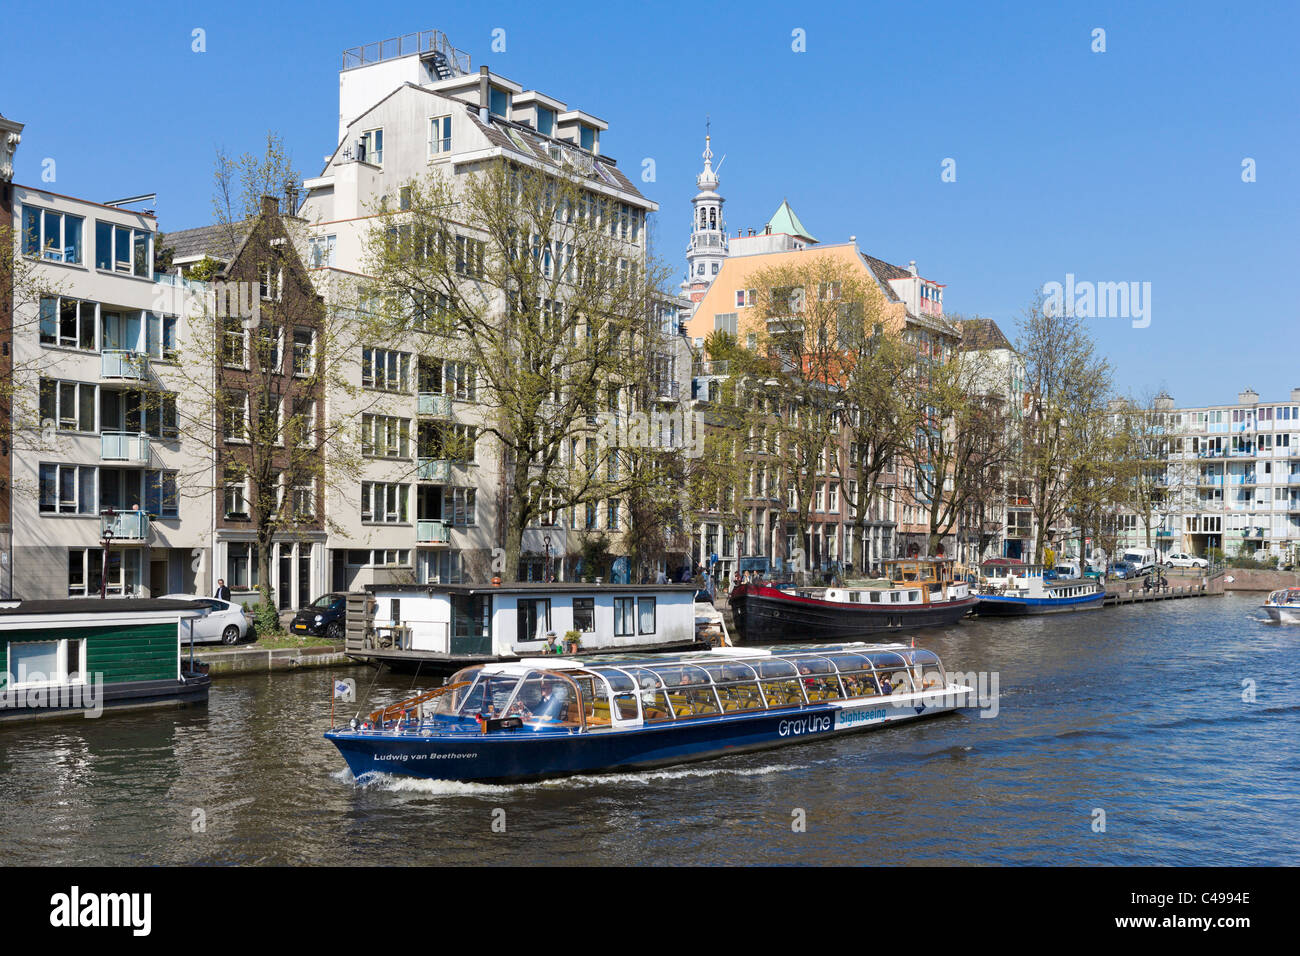 Visite guidée sur la rivière Amstel près de la place Waterlooplein, Amsterdam, Pays-Bas Banque D'Images